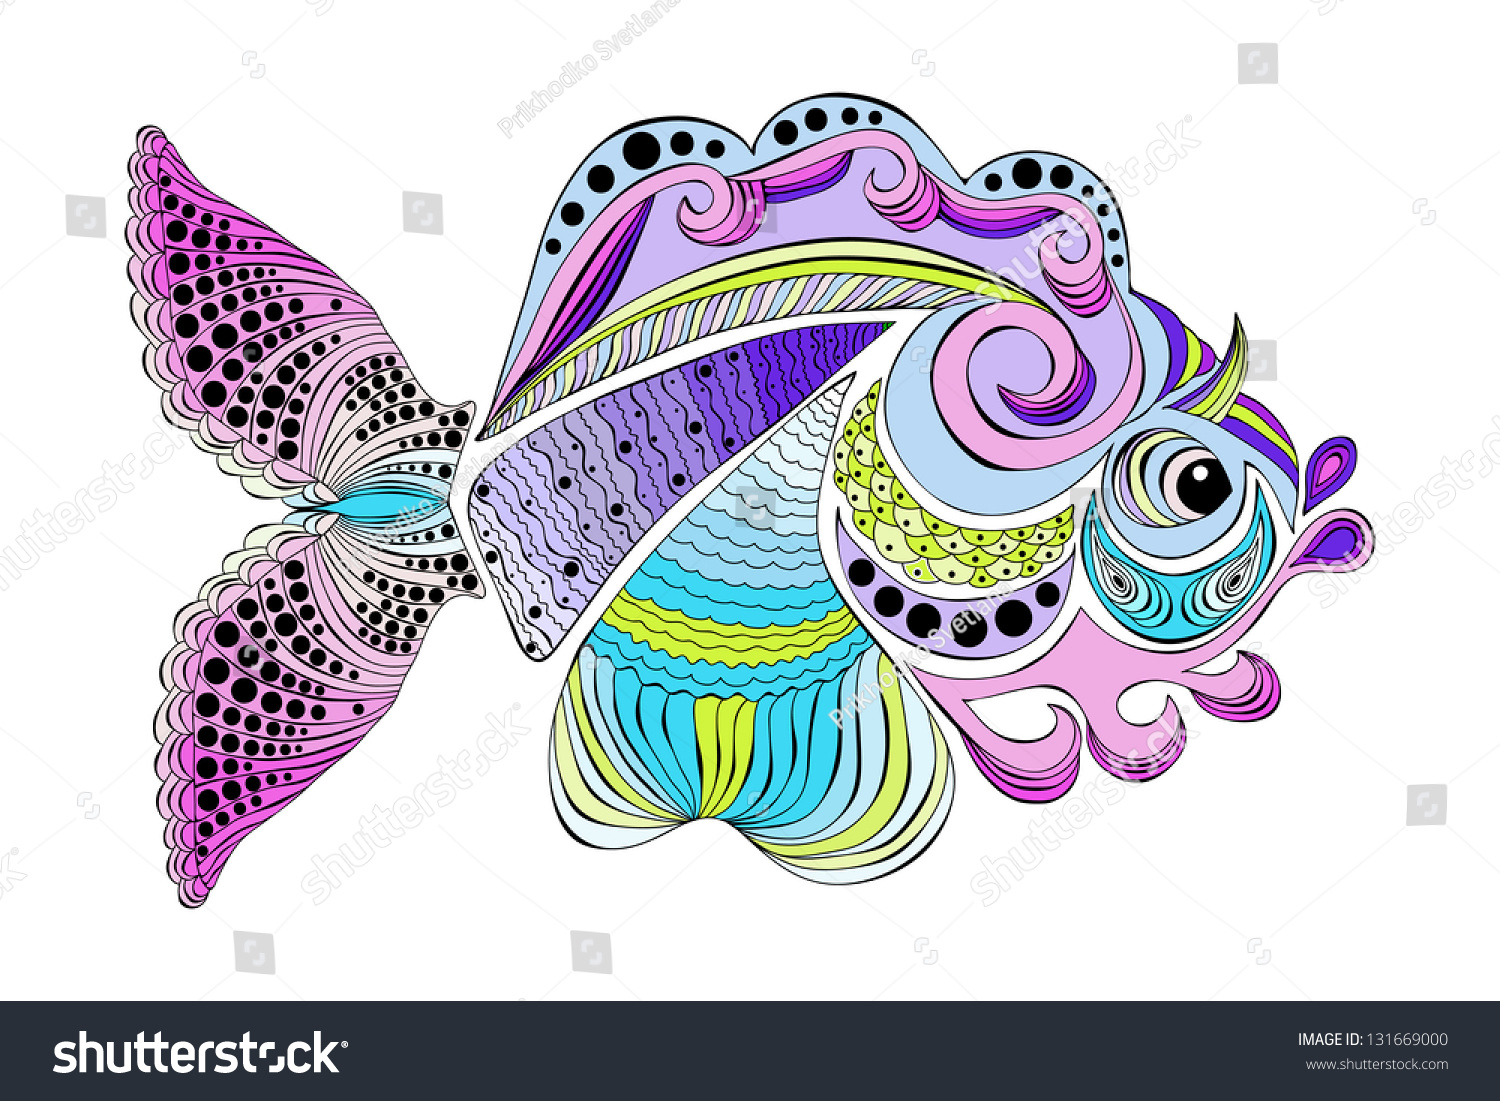 Color Ornamental Fish Stock Photo 131669000 : Shutterstock